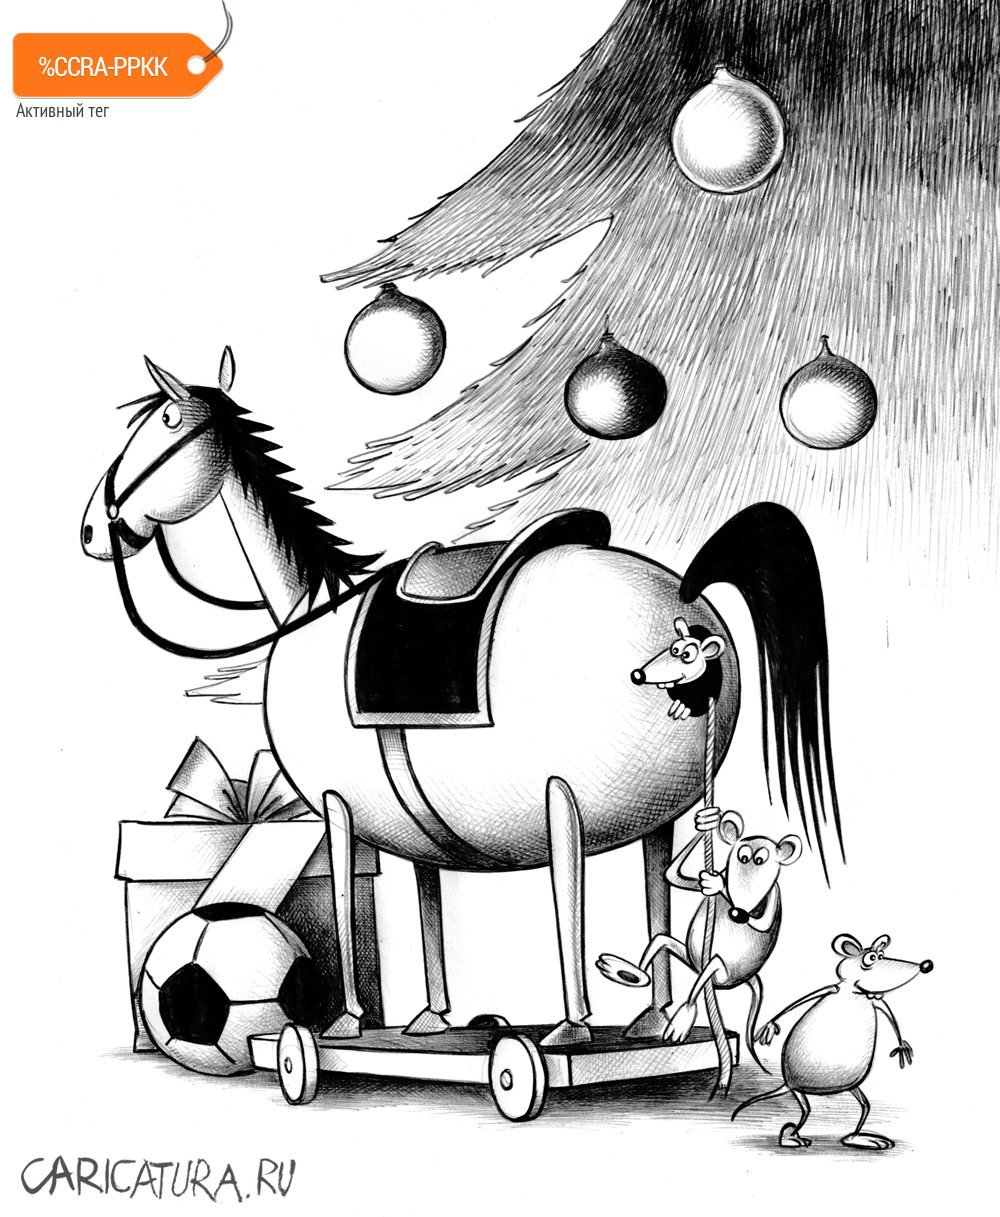 Карикатура "Троянский конь", Сергей Корсун